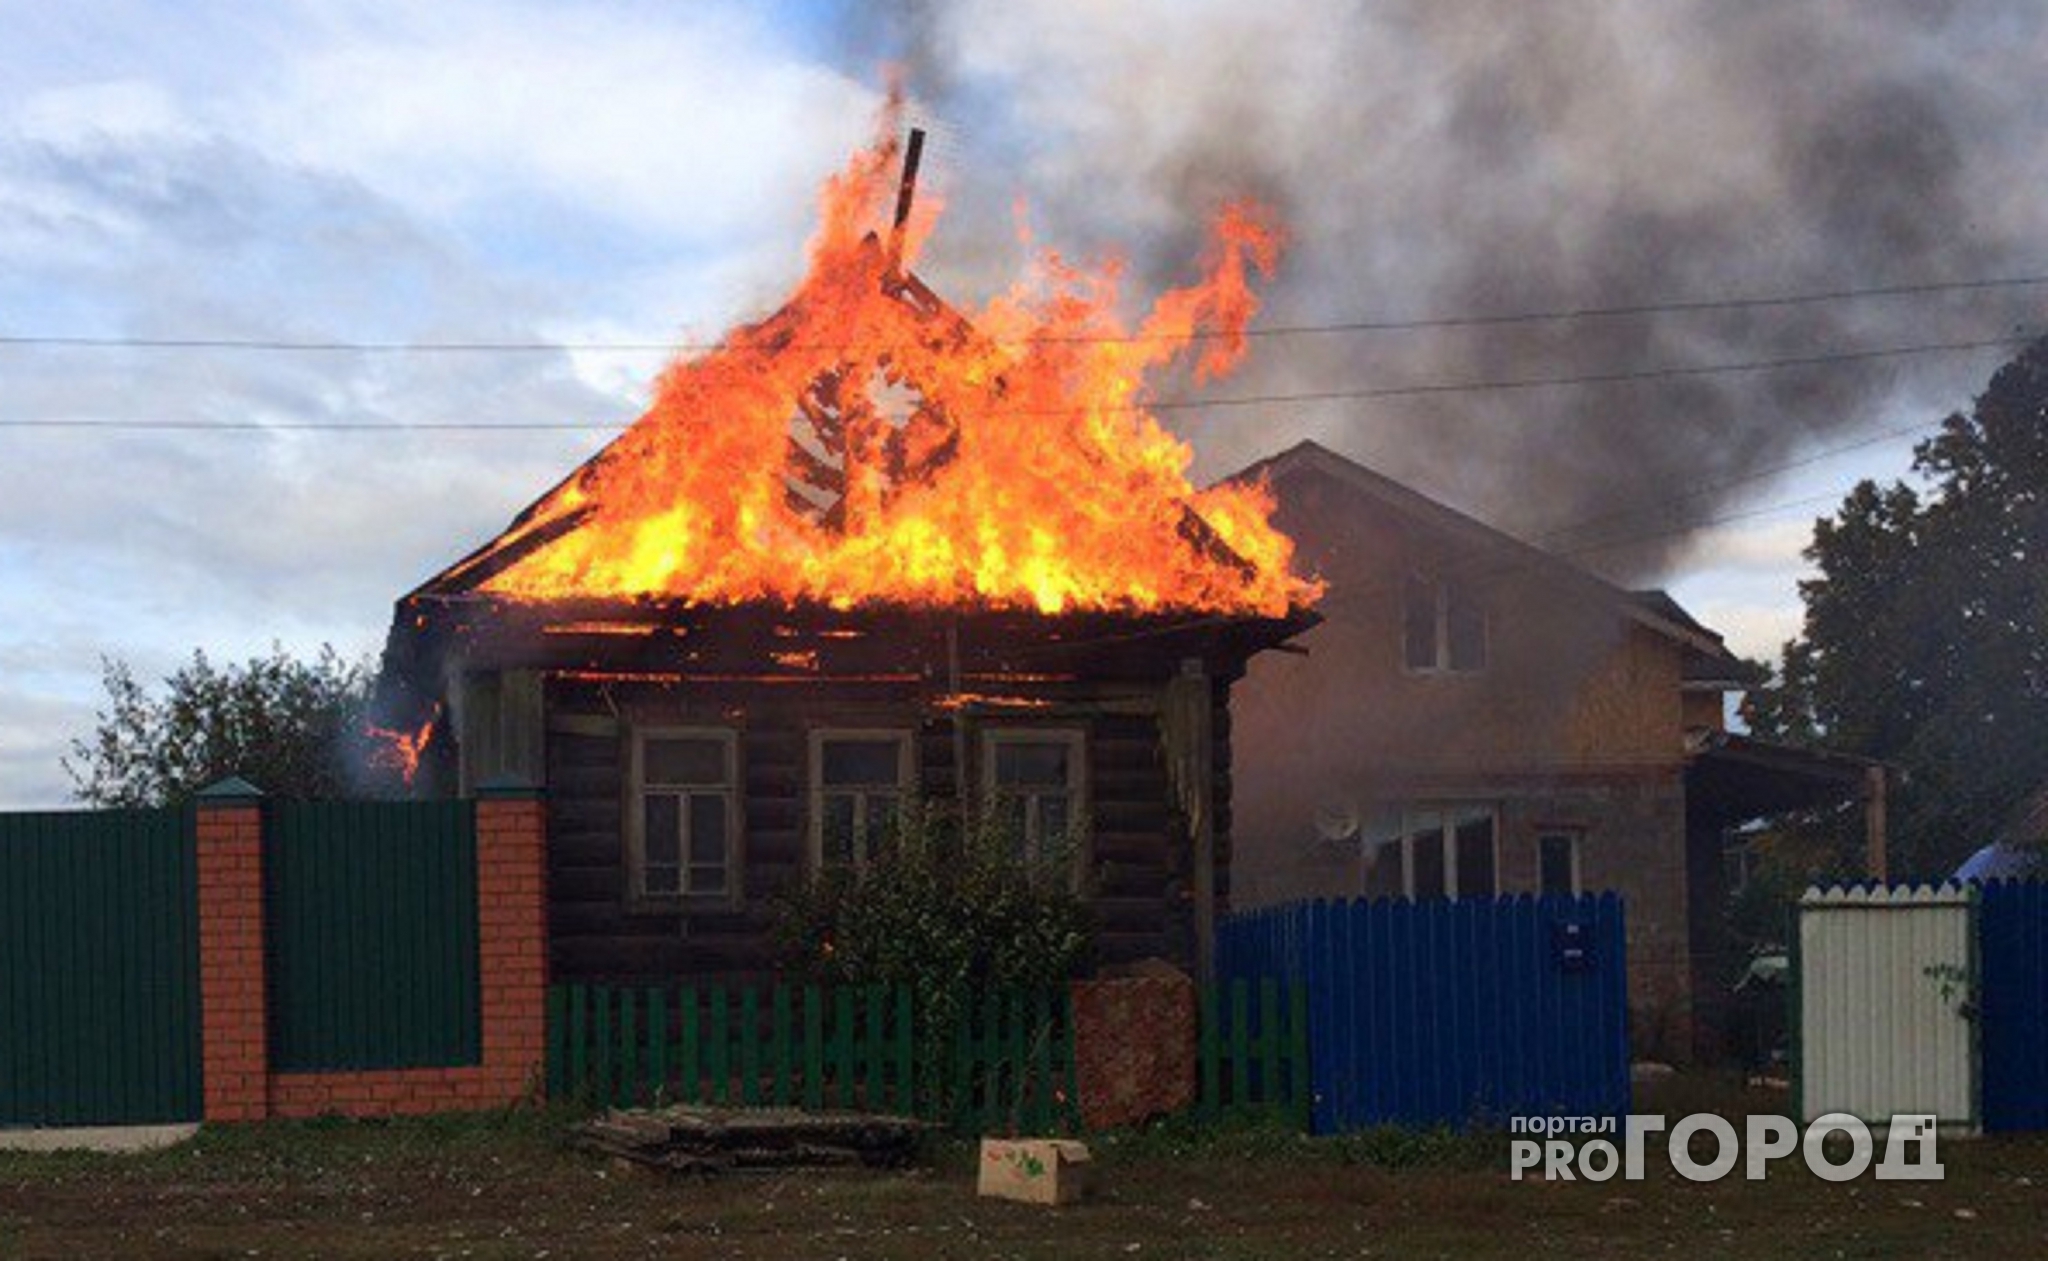 Огонь страсти: ярославна спалила дом возлюбленного